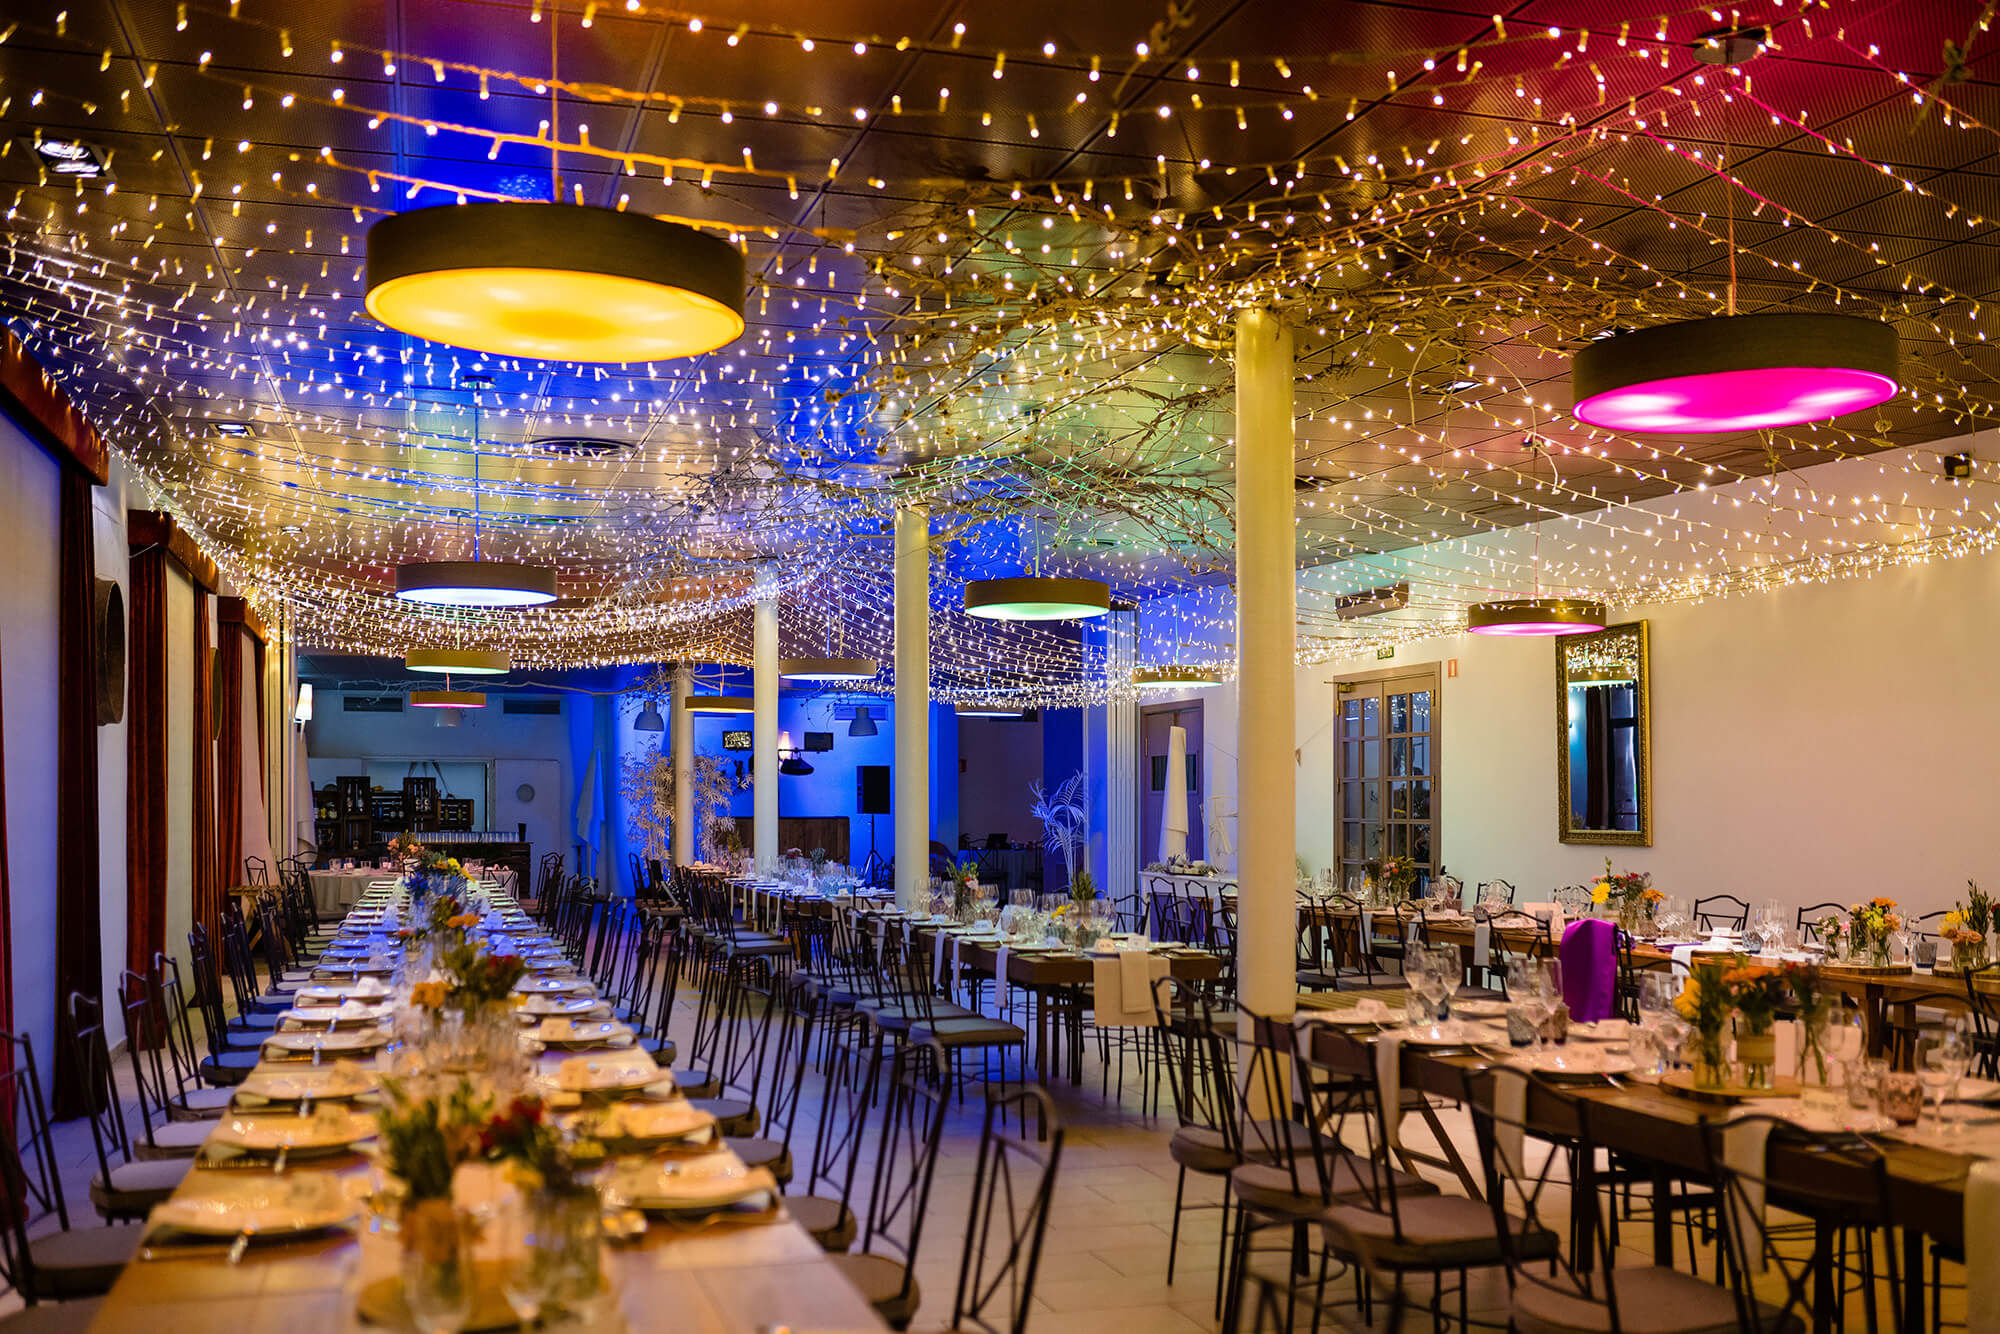 Decoració amb llums led pel menjador el dia de la boda a Masia la Torre del Gall.